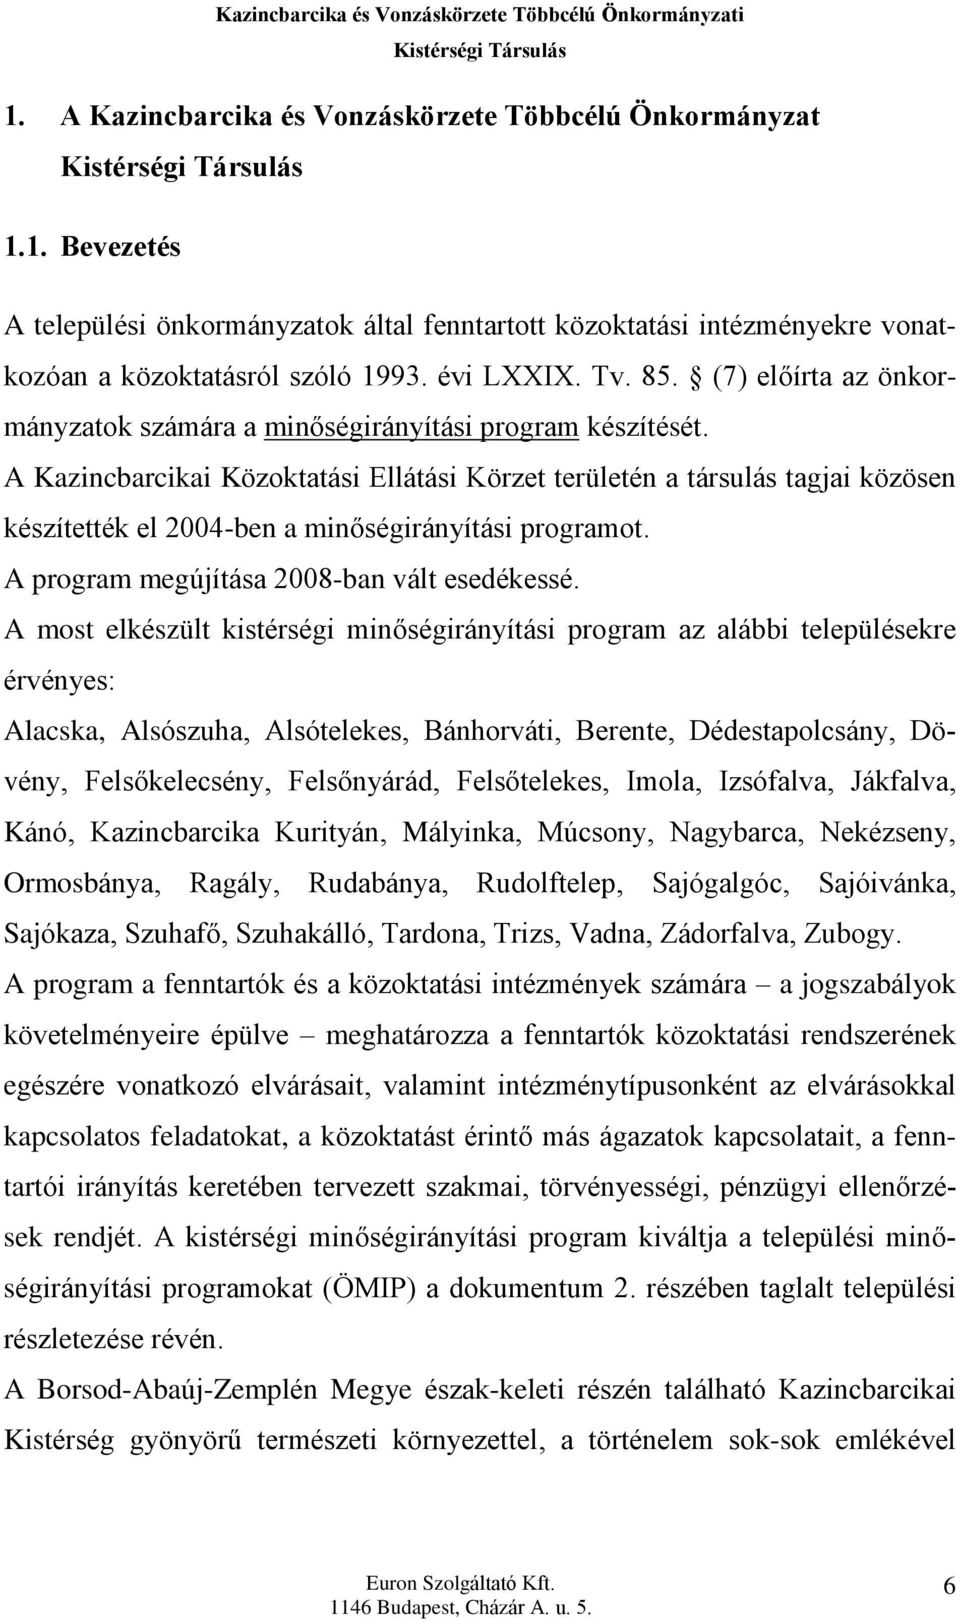 A Kazincbarcikai Közoktatási Ellátási Körzet területén a társulás tagjai közösen készítették el 2004-ben a minõségirányítási programot. A program megújítása 2008-ban vált esedékessé.